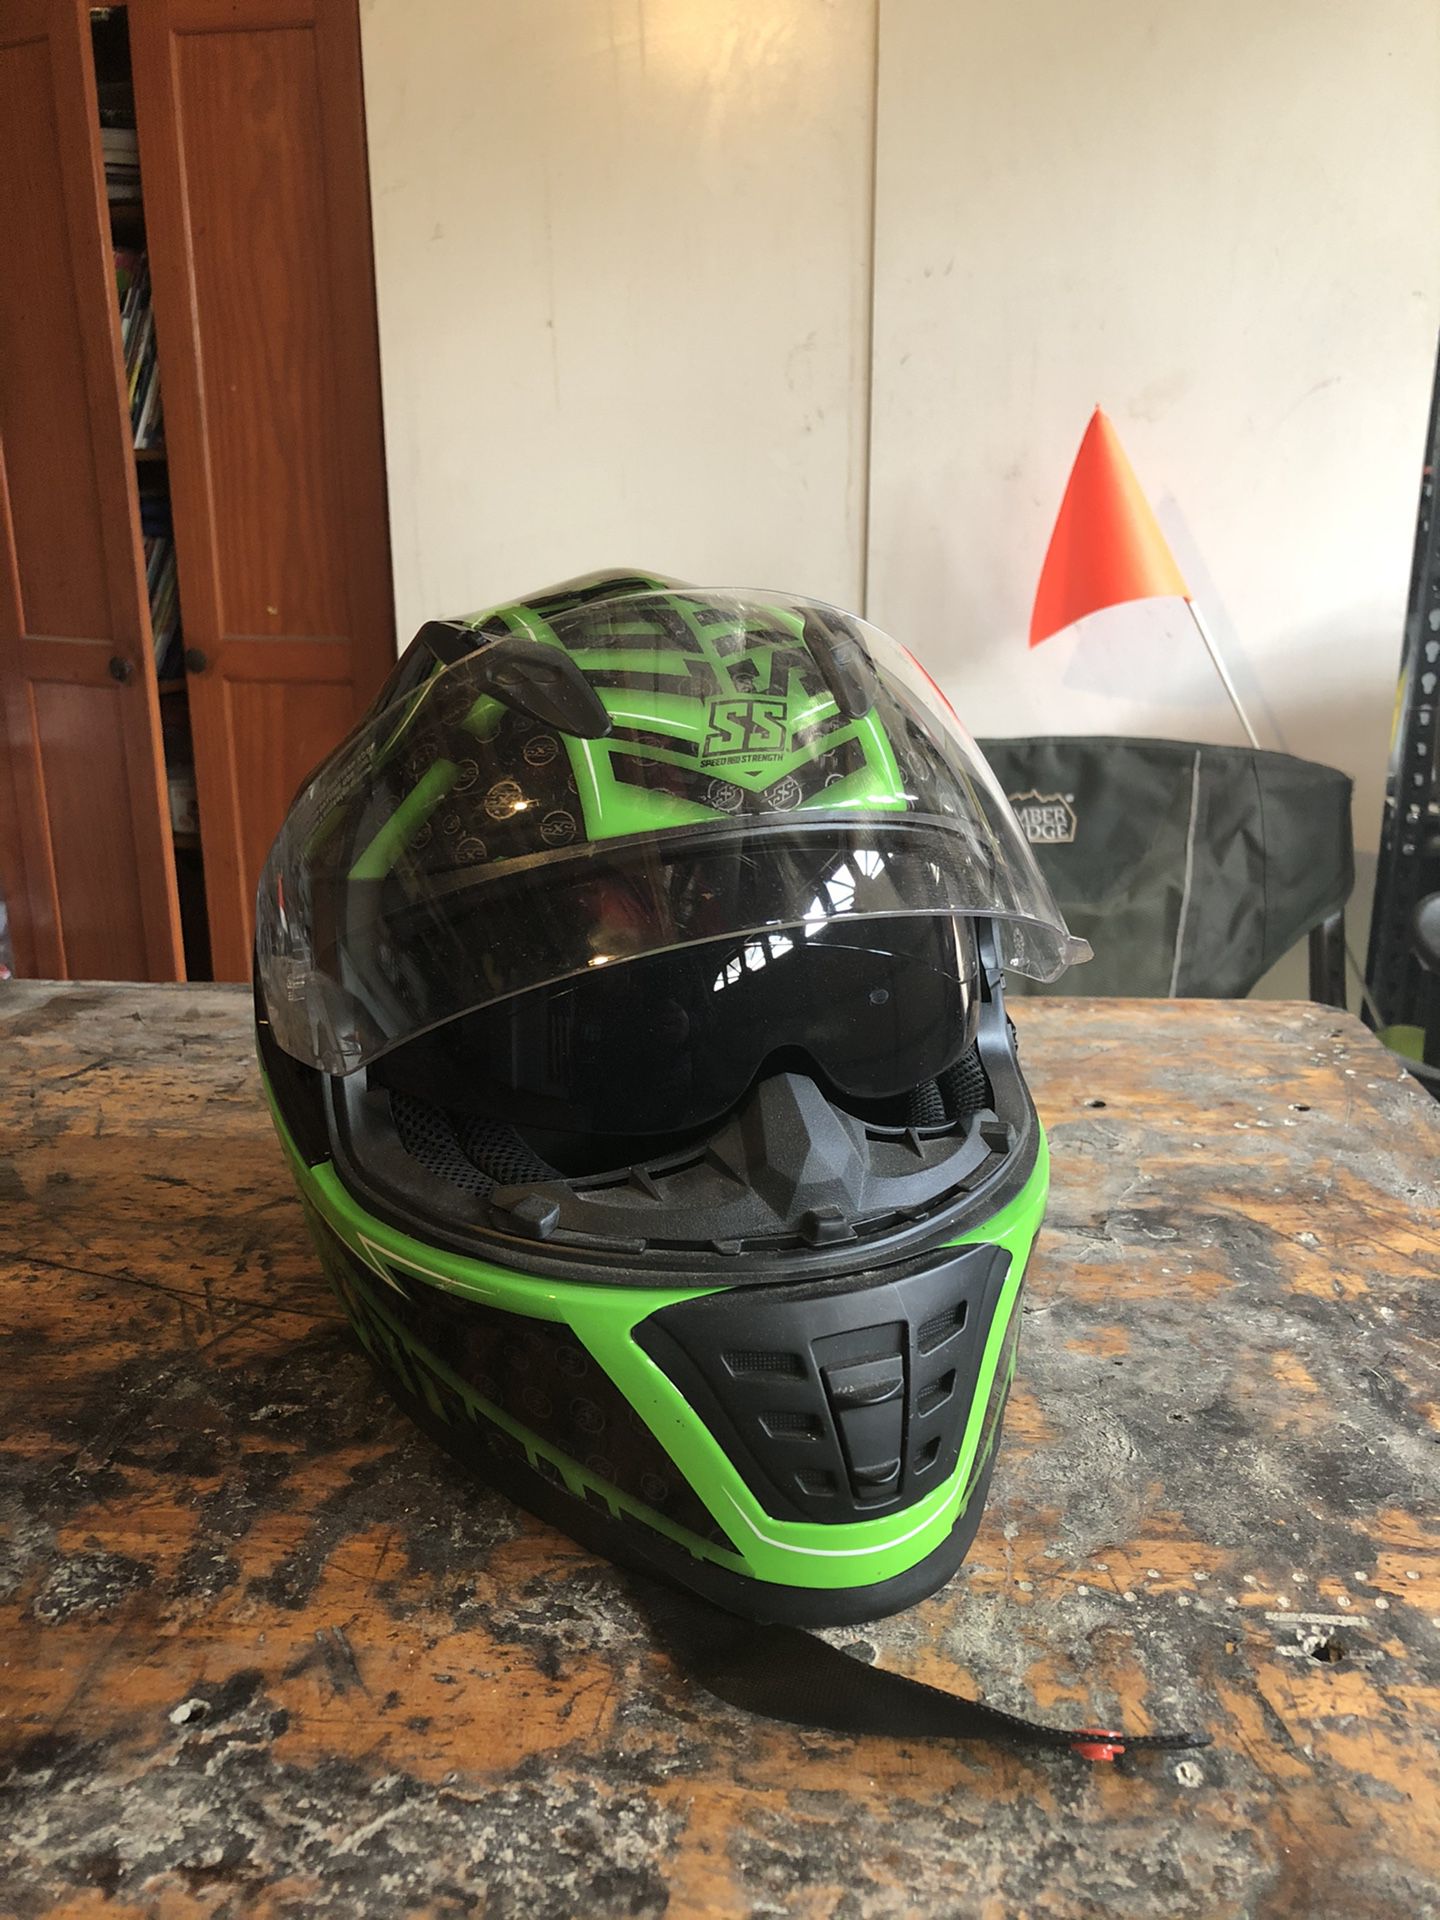 SS motorcycle helmet